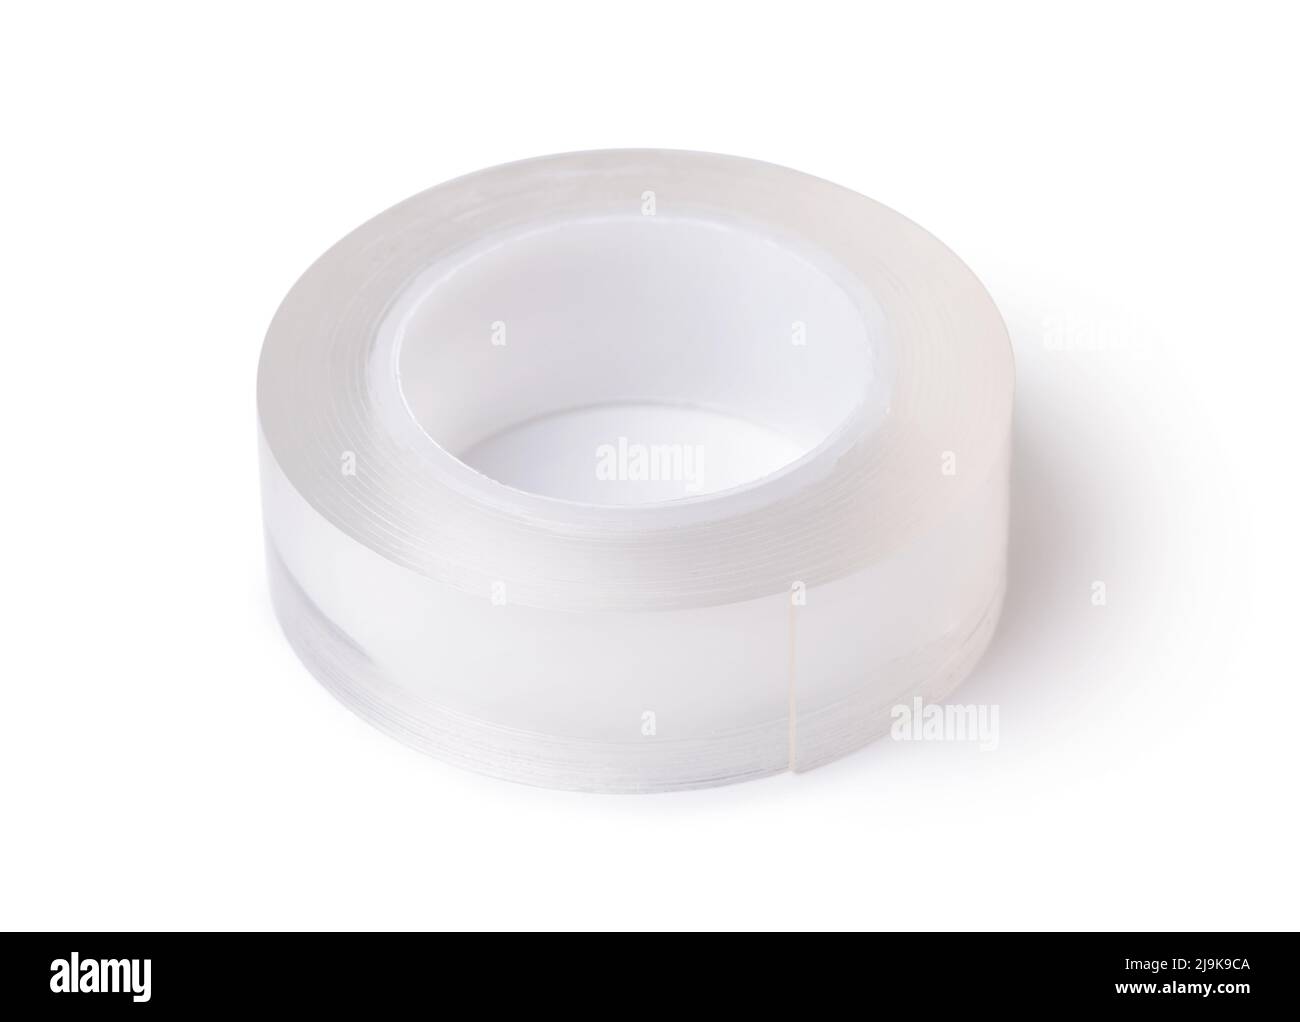 Rouleau de ruban adhésif double face transparent en silicone isolé sur blanc Banque D'Images